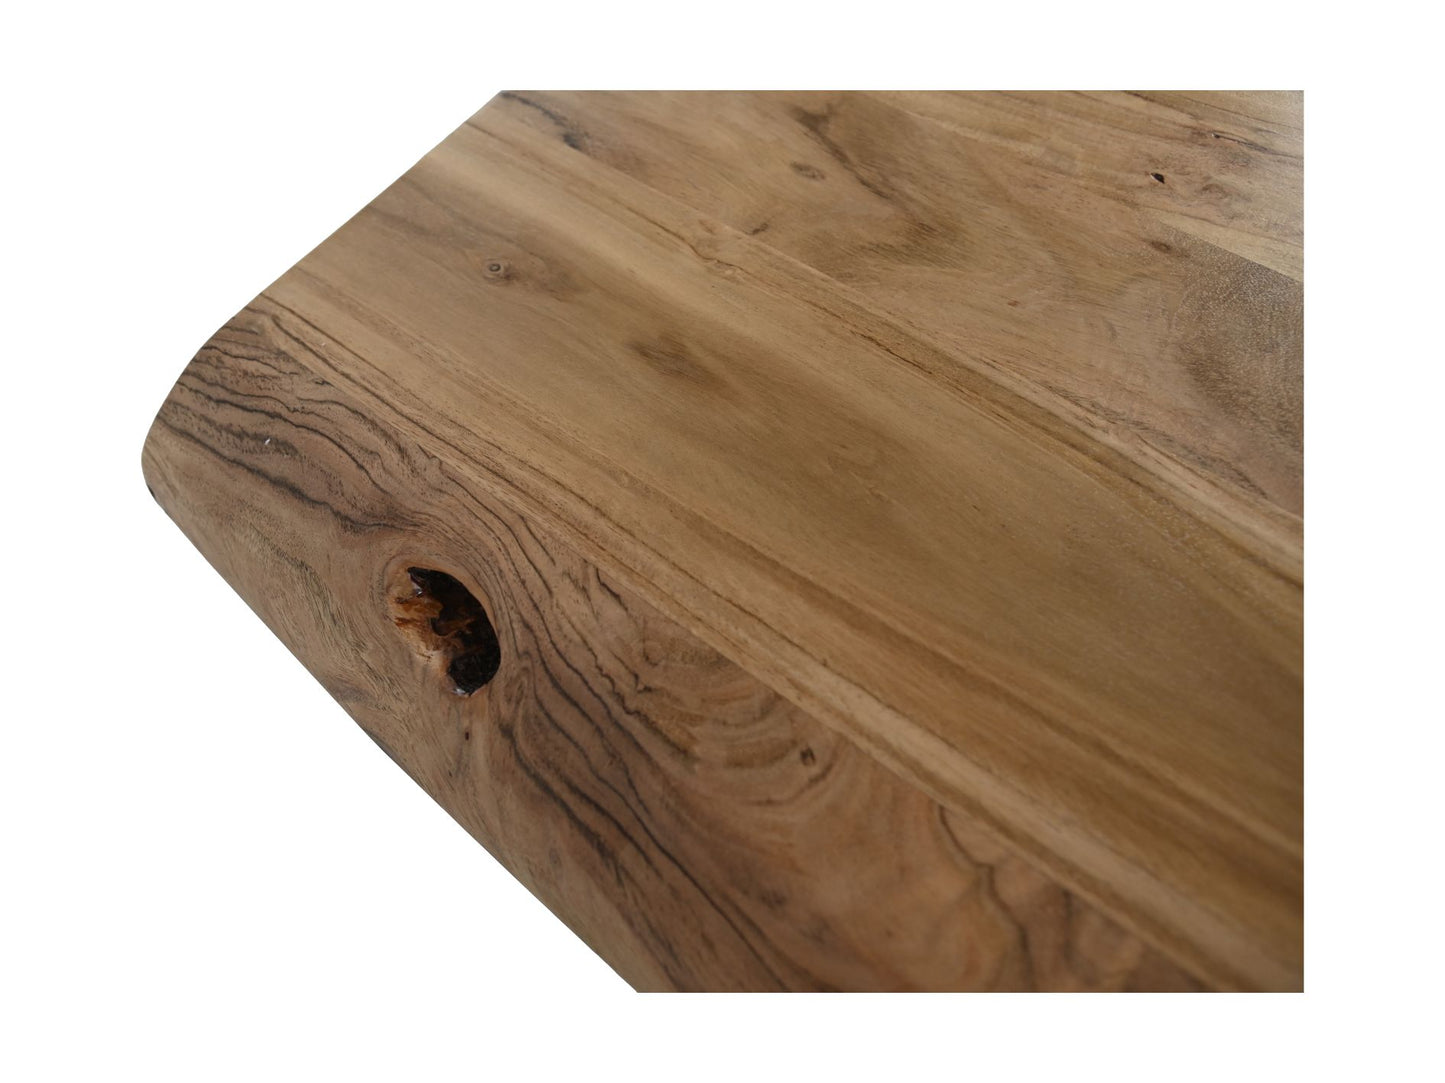 Rechthoekige tafel Soho luxe - 300x100x76 - Naturel/zwart - Acacia/metaal